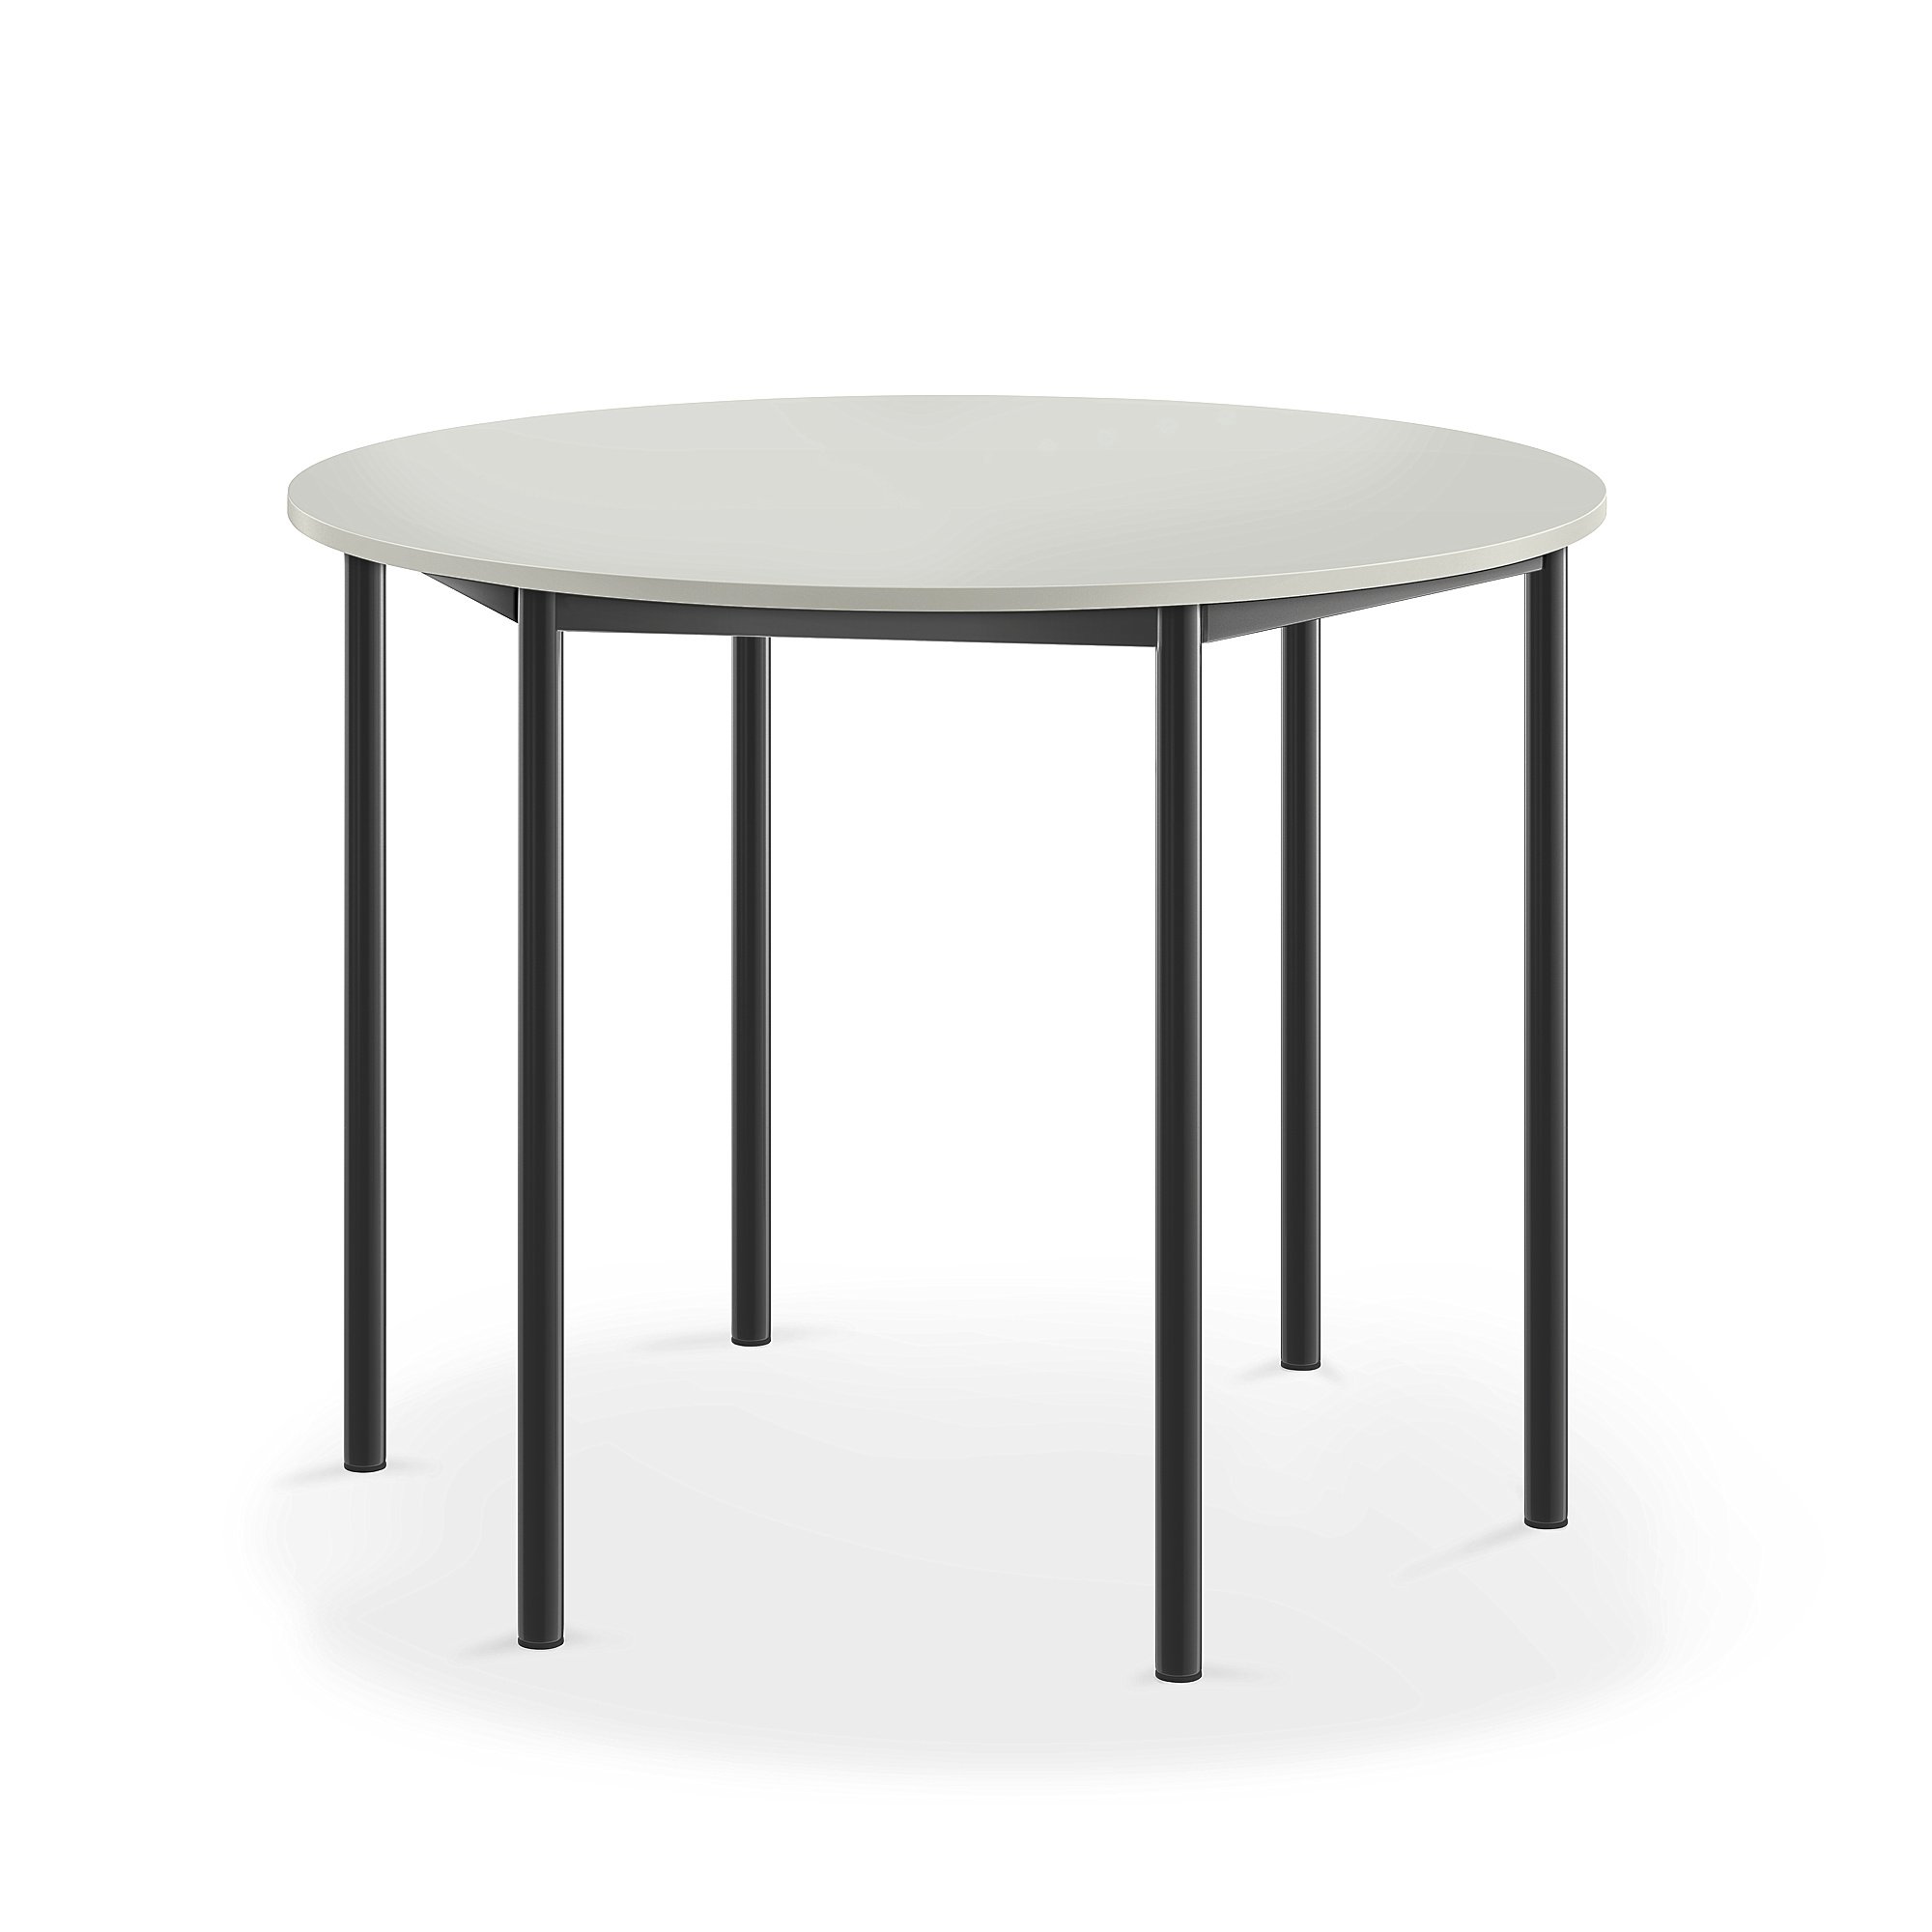 Stůl BORÅS, Ø1200x900 mm, antracitově šedé nohy, HPL deska, šedá